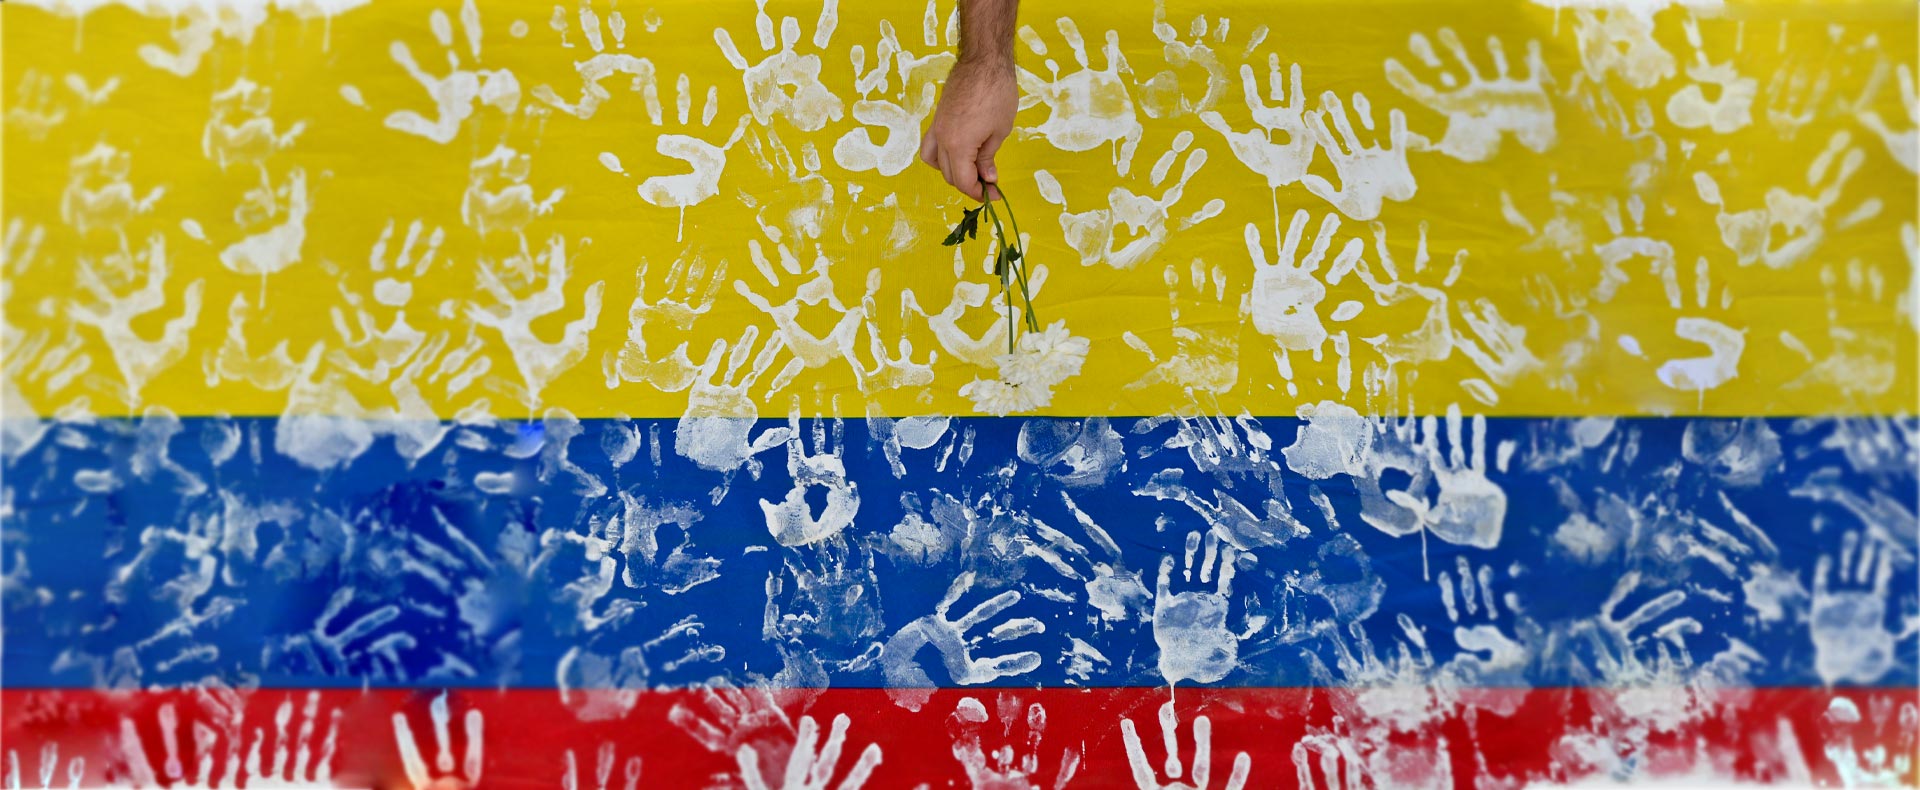 Bandera de Colombia con huellas blancas